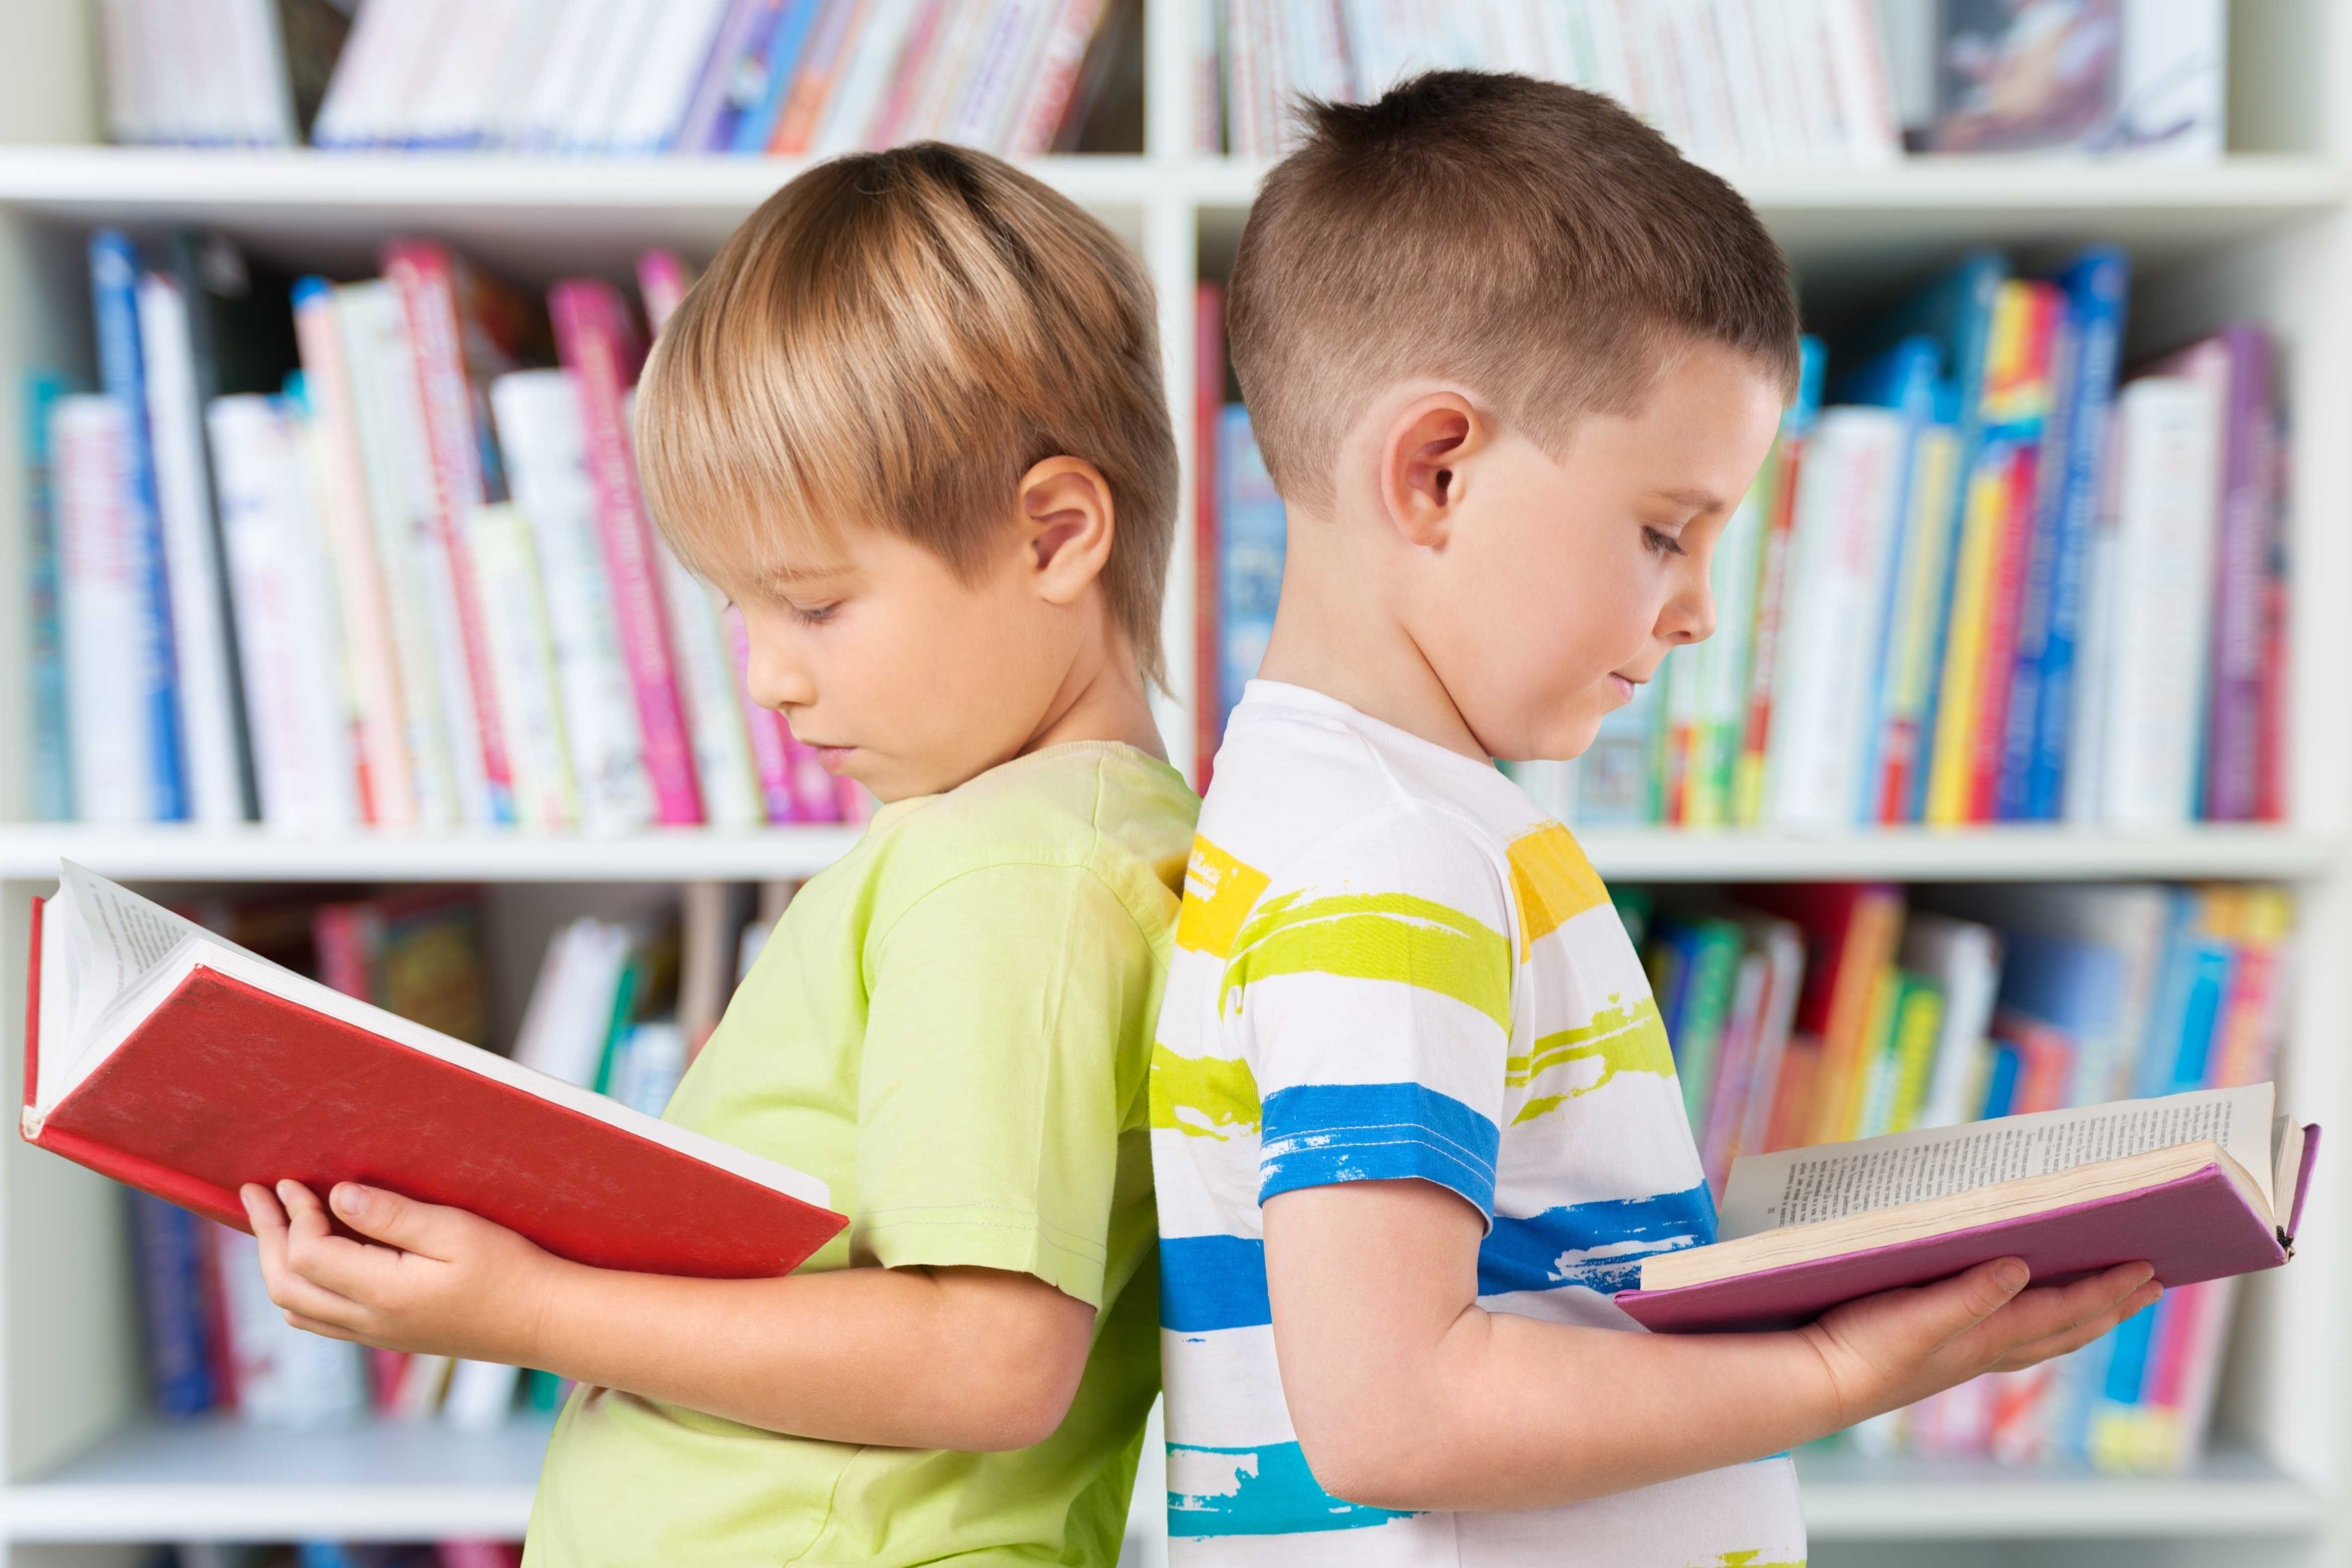 Отдых с книгой — обзор лучших детских книг для чтения на осенних каникулах | kidreader.ru — навигатор по детской литературе